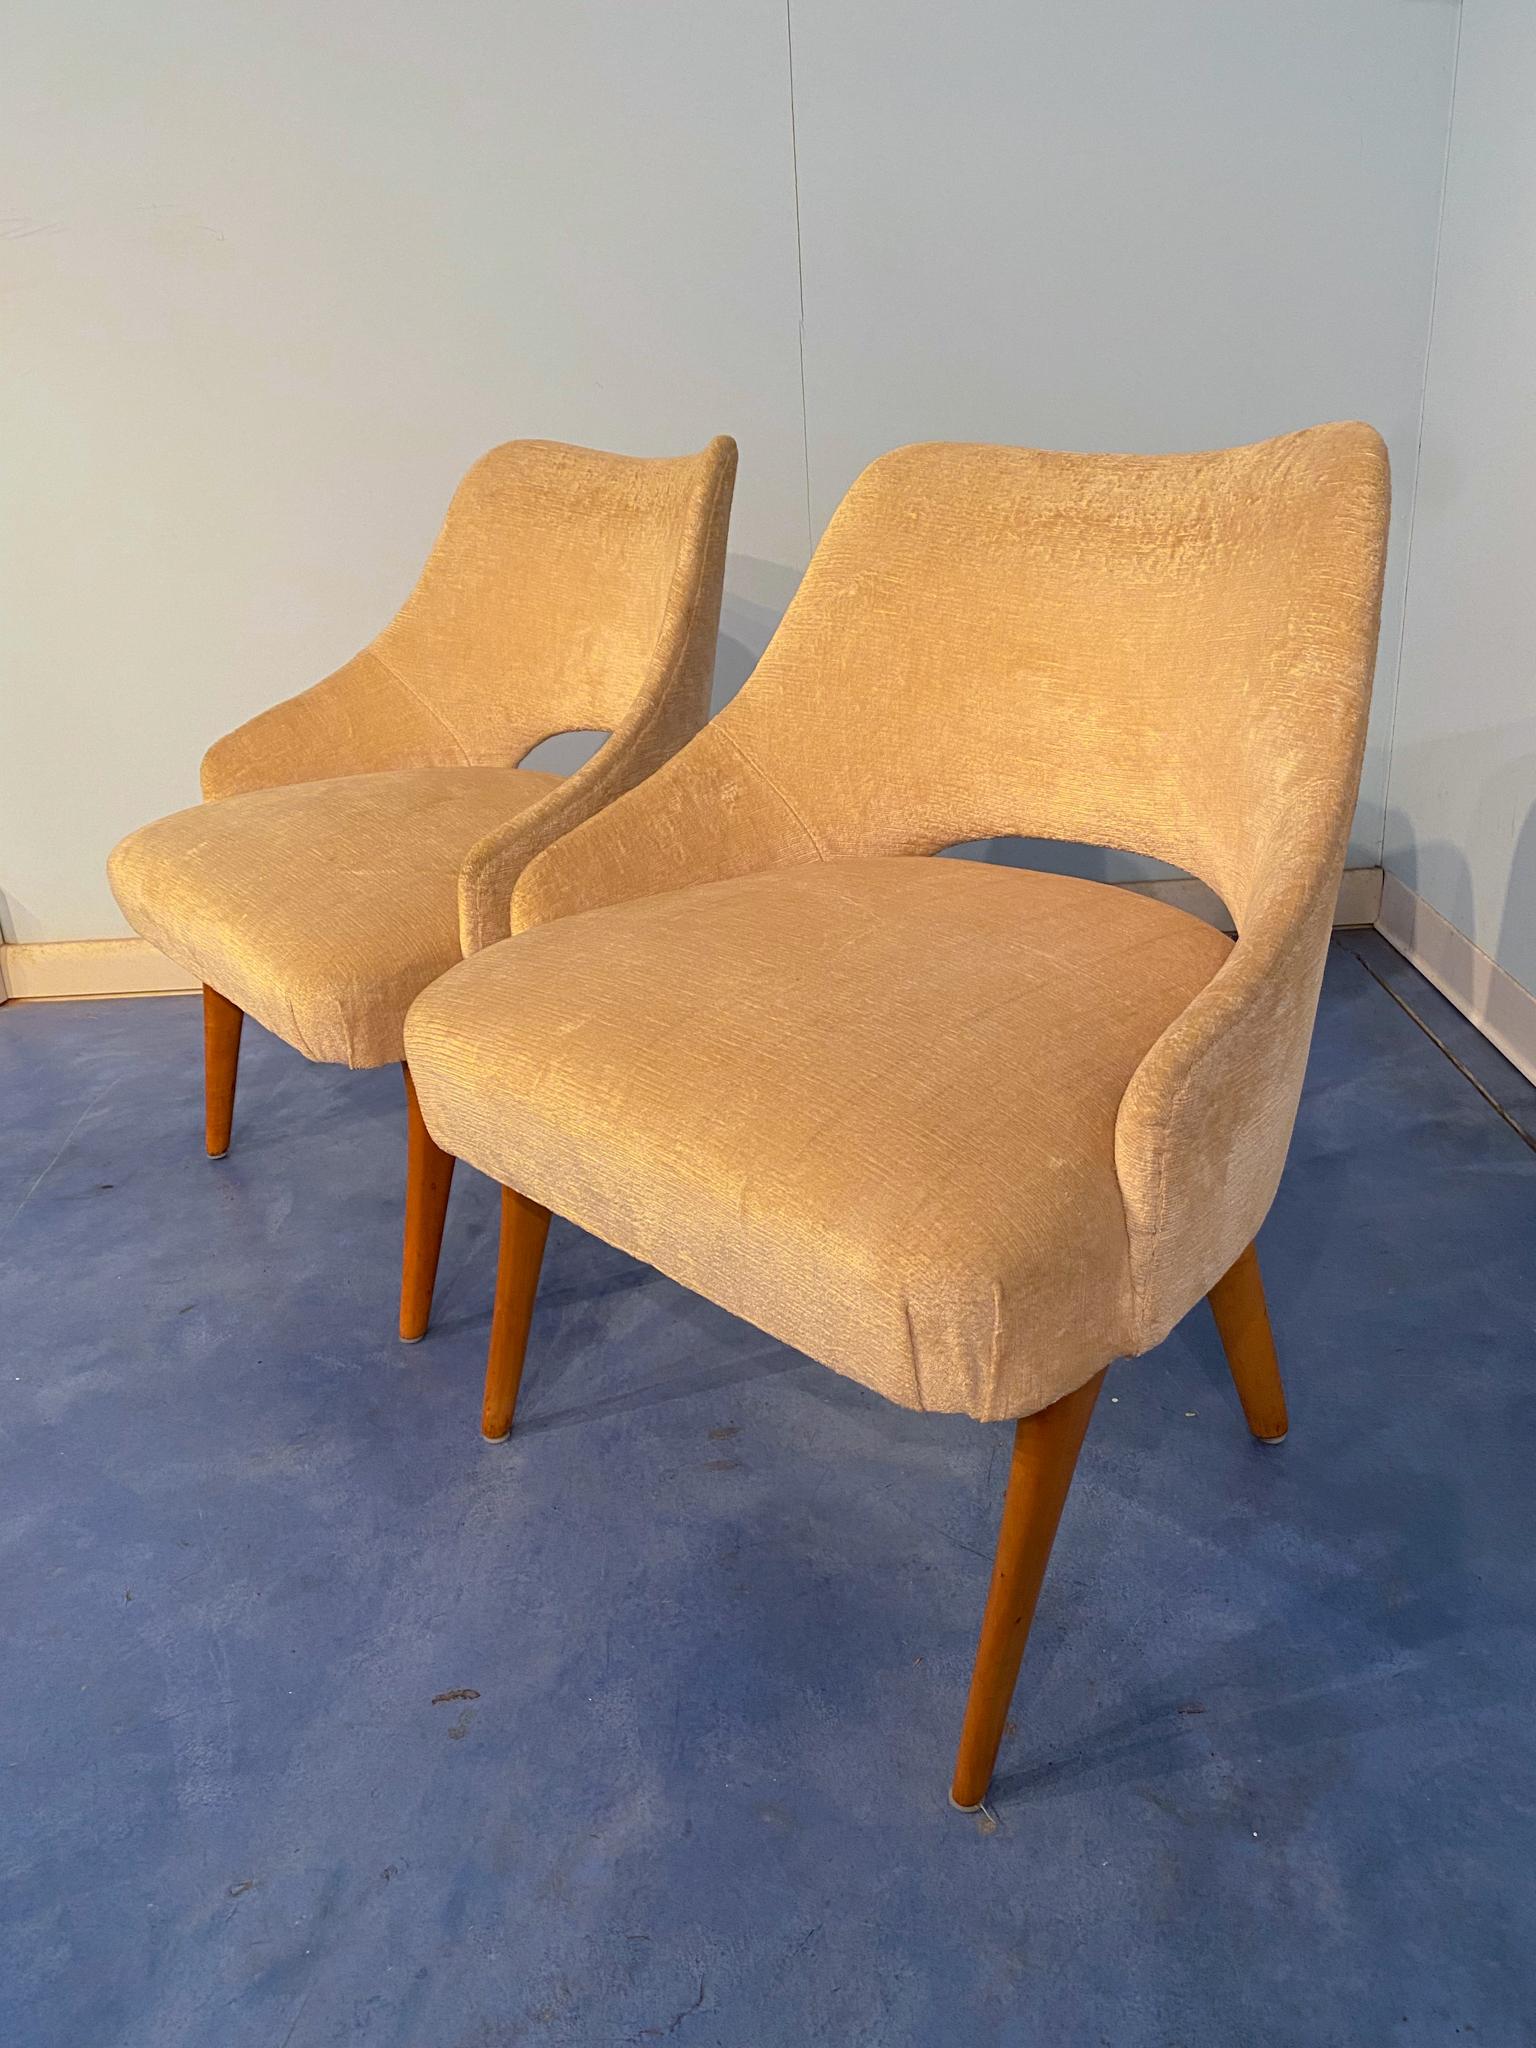 Diese italienischen Sessel aus der Mitte des Jahrhunderts sind aus Ahorn und gelbem Samt gefertigt und wurden 1950 von Vittorio Dassi entworfen. Die eleganten Linien zeichnen sich durch weiche und abgerundete Formen aus, die sie in jeder Umgebung zu